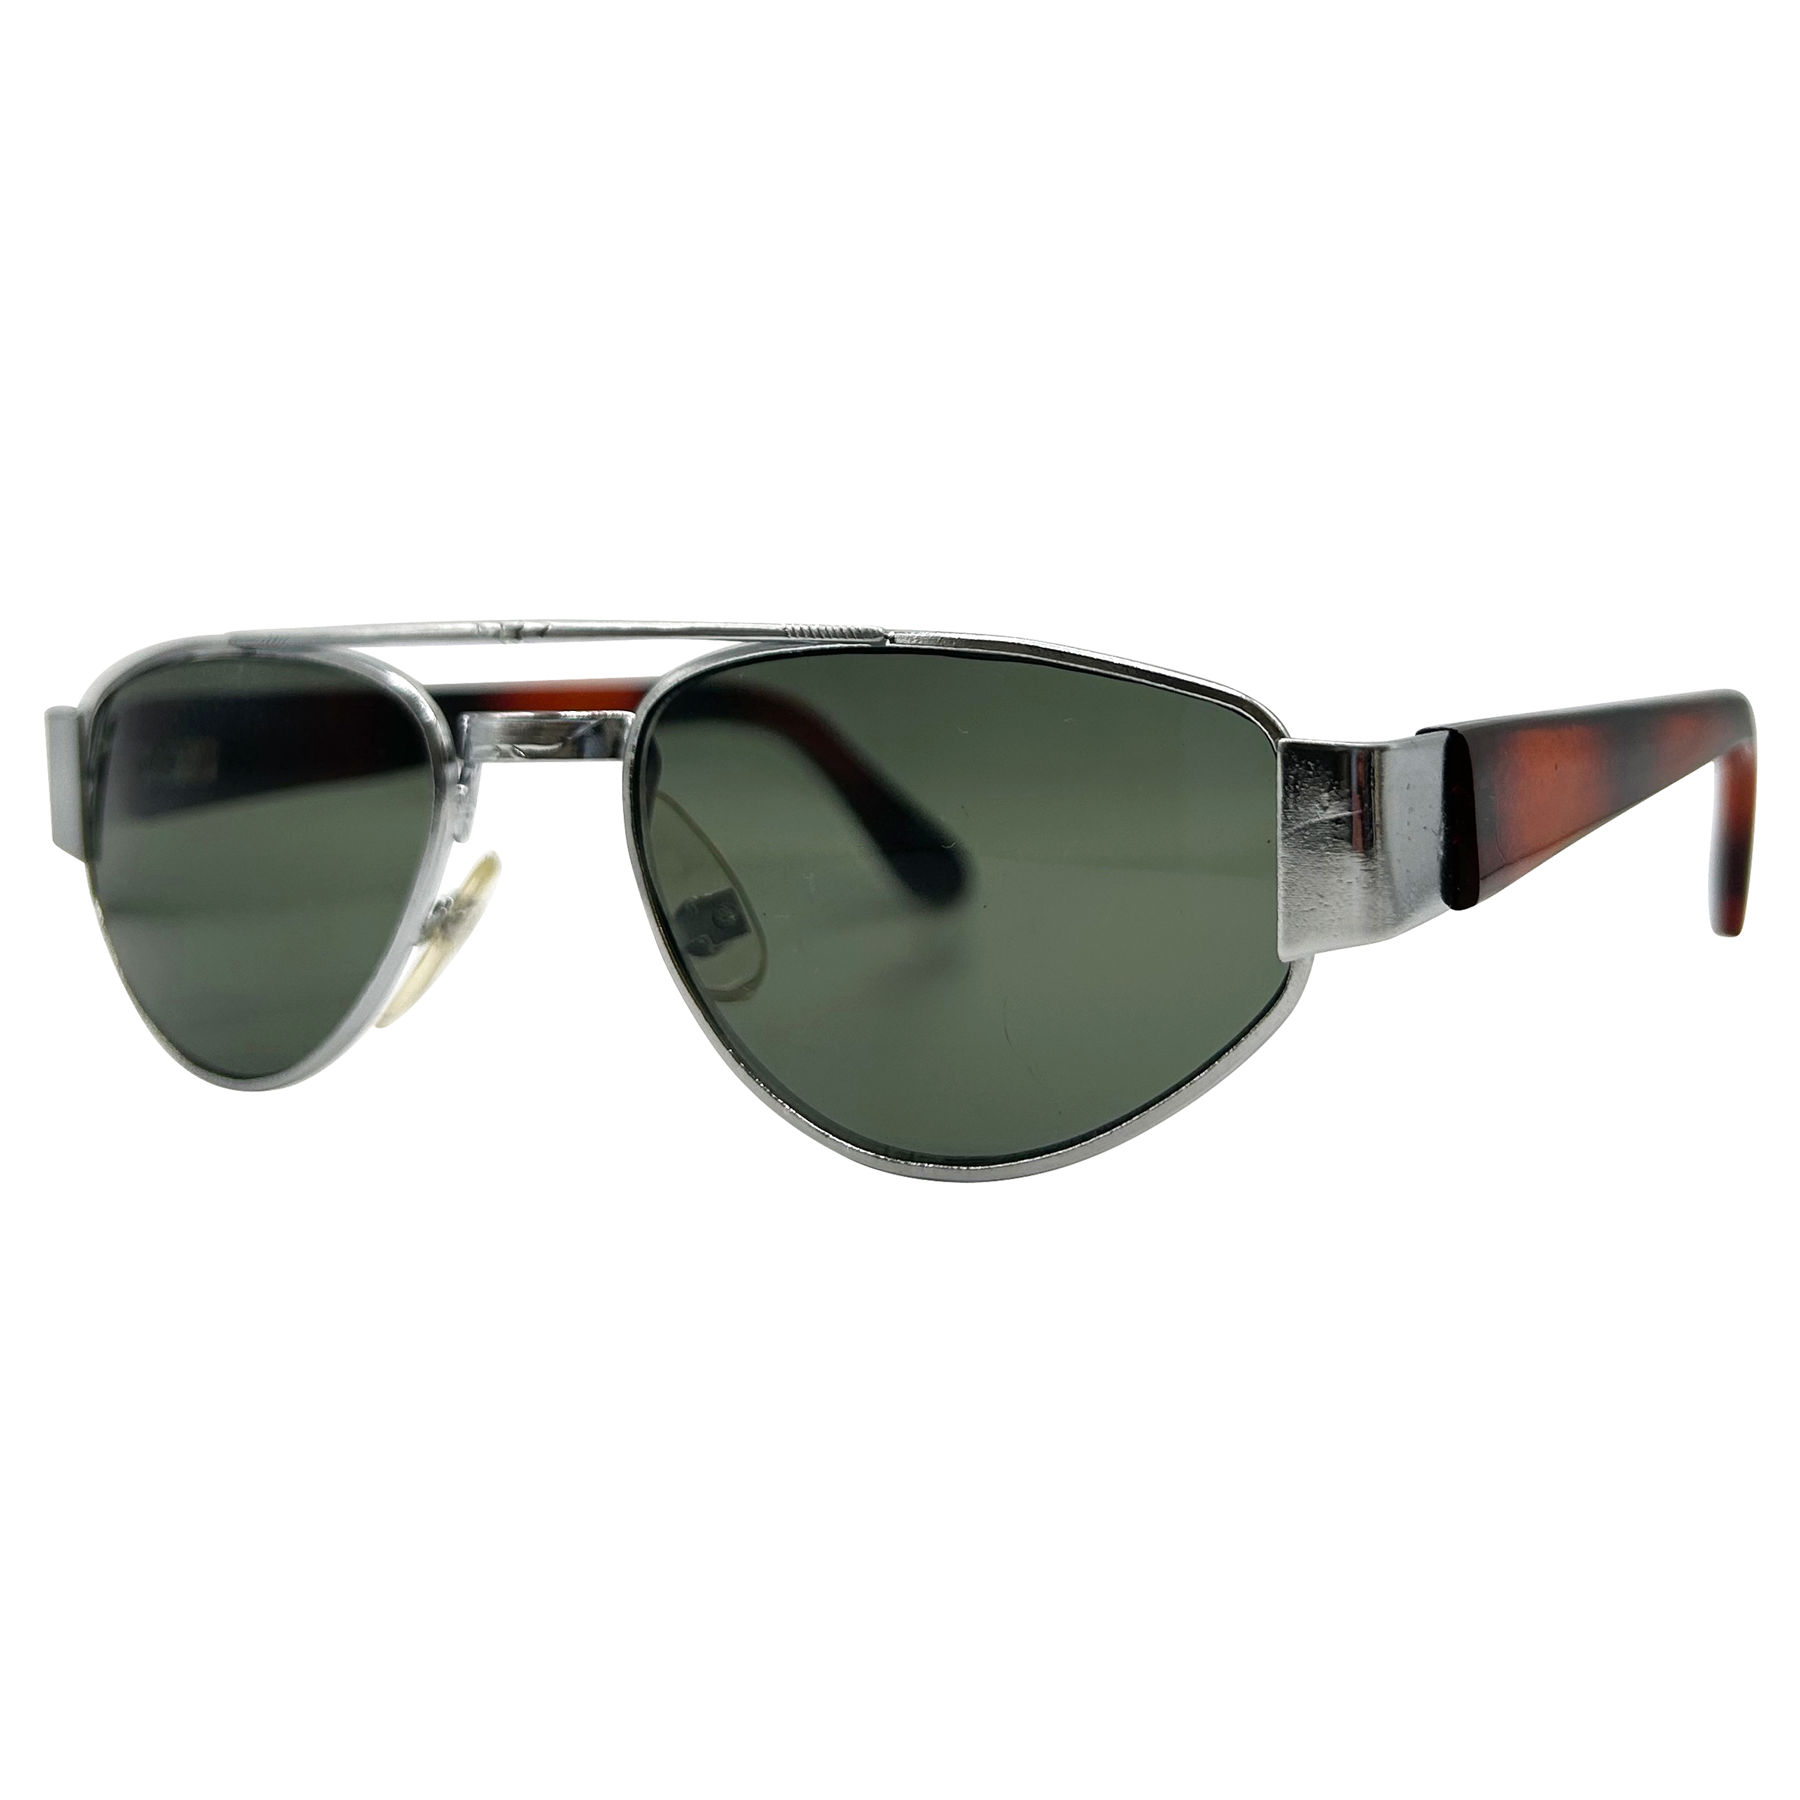 ZZYZX Tortoise Silver/G15 Sports Sunglasses